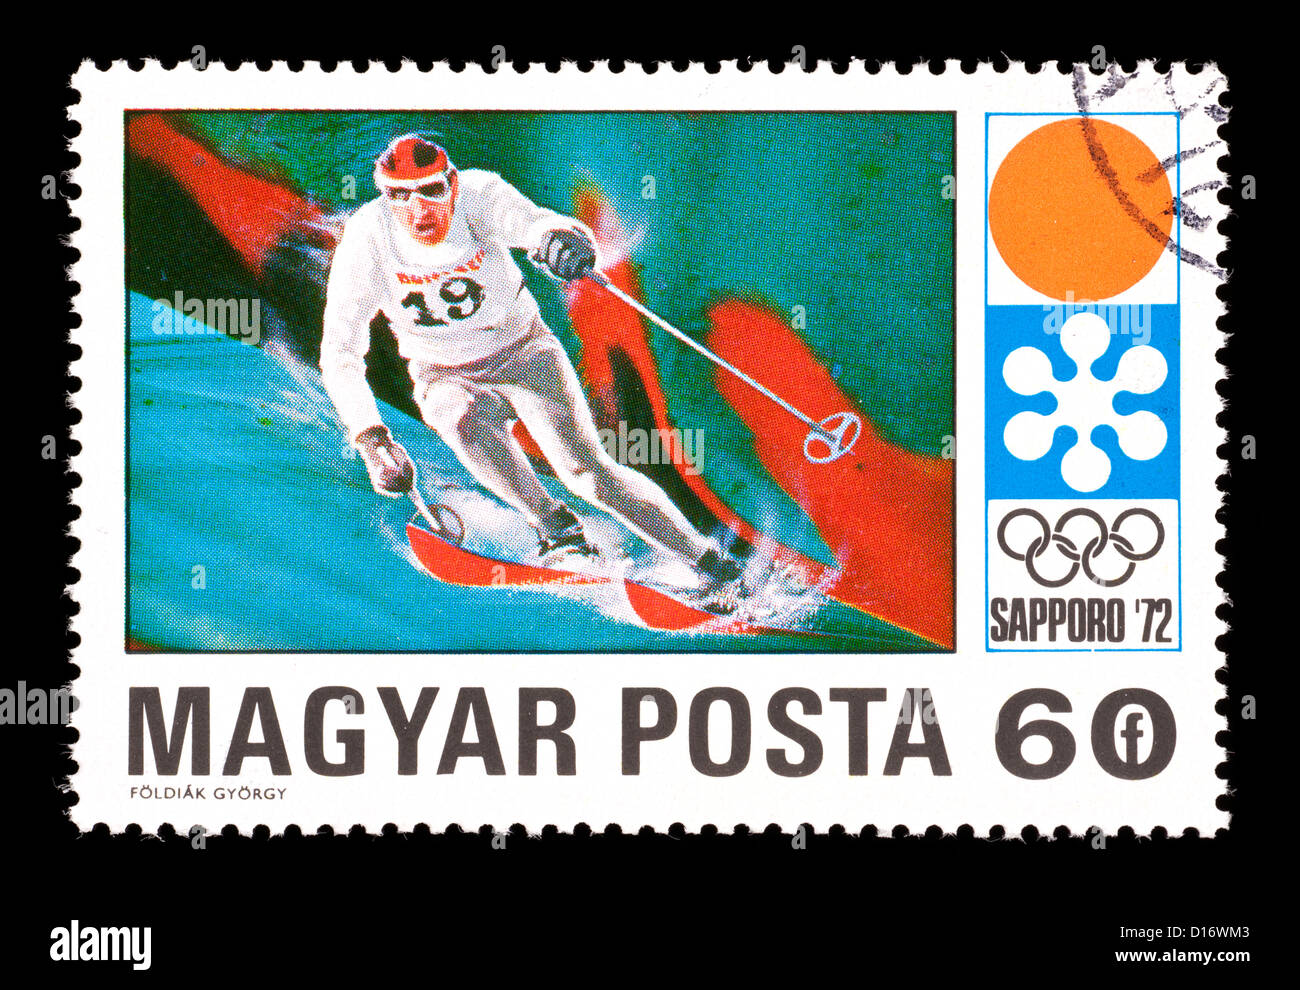 Francobollo da Ungheria raffigurante una discesa sciatore, rilasciati per le Olimpiadi Invernali del 1972 a Sapporo, Giappone. Foto Stock